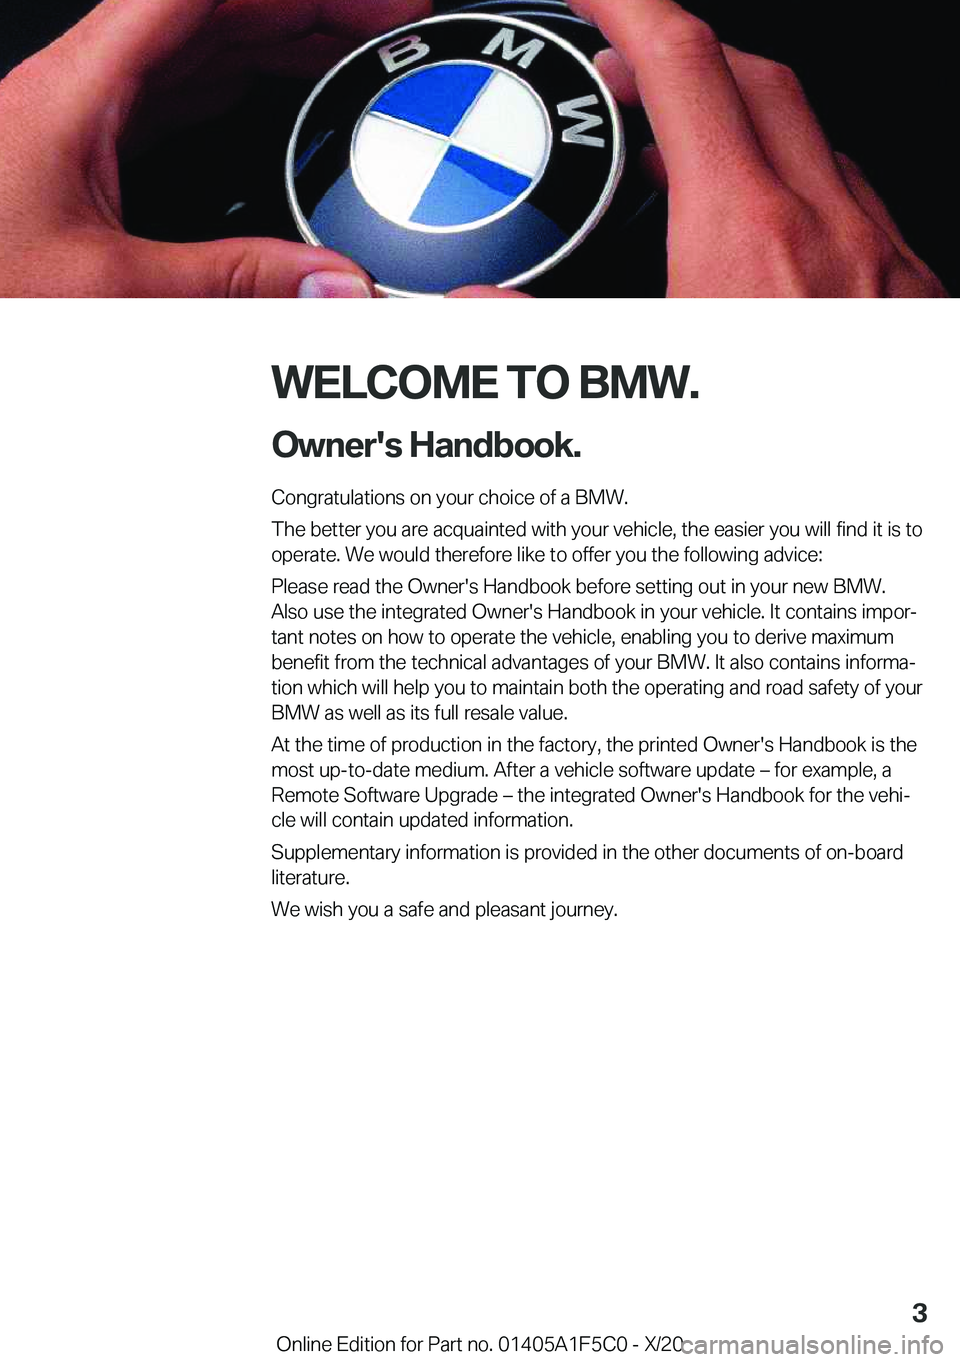 BMW X4 M 2021  Owners Manual �W�E�L�C�O�M�E��T�O��B�M�W�.�O�w�n�e�r�'�s��H�a�n�d�b�o�o�k�.
�C�o�n�g�r�a�t�u�l�a�t�i�o�n�s��o�n��y�o�u�r��c�h�o�i�c�e��o�f��a��B�M�W�.
�T�h�e��b�e�t�t�e�r��y�o�u��a�r�e��a�c�q�u�a�i